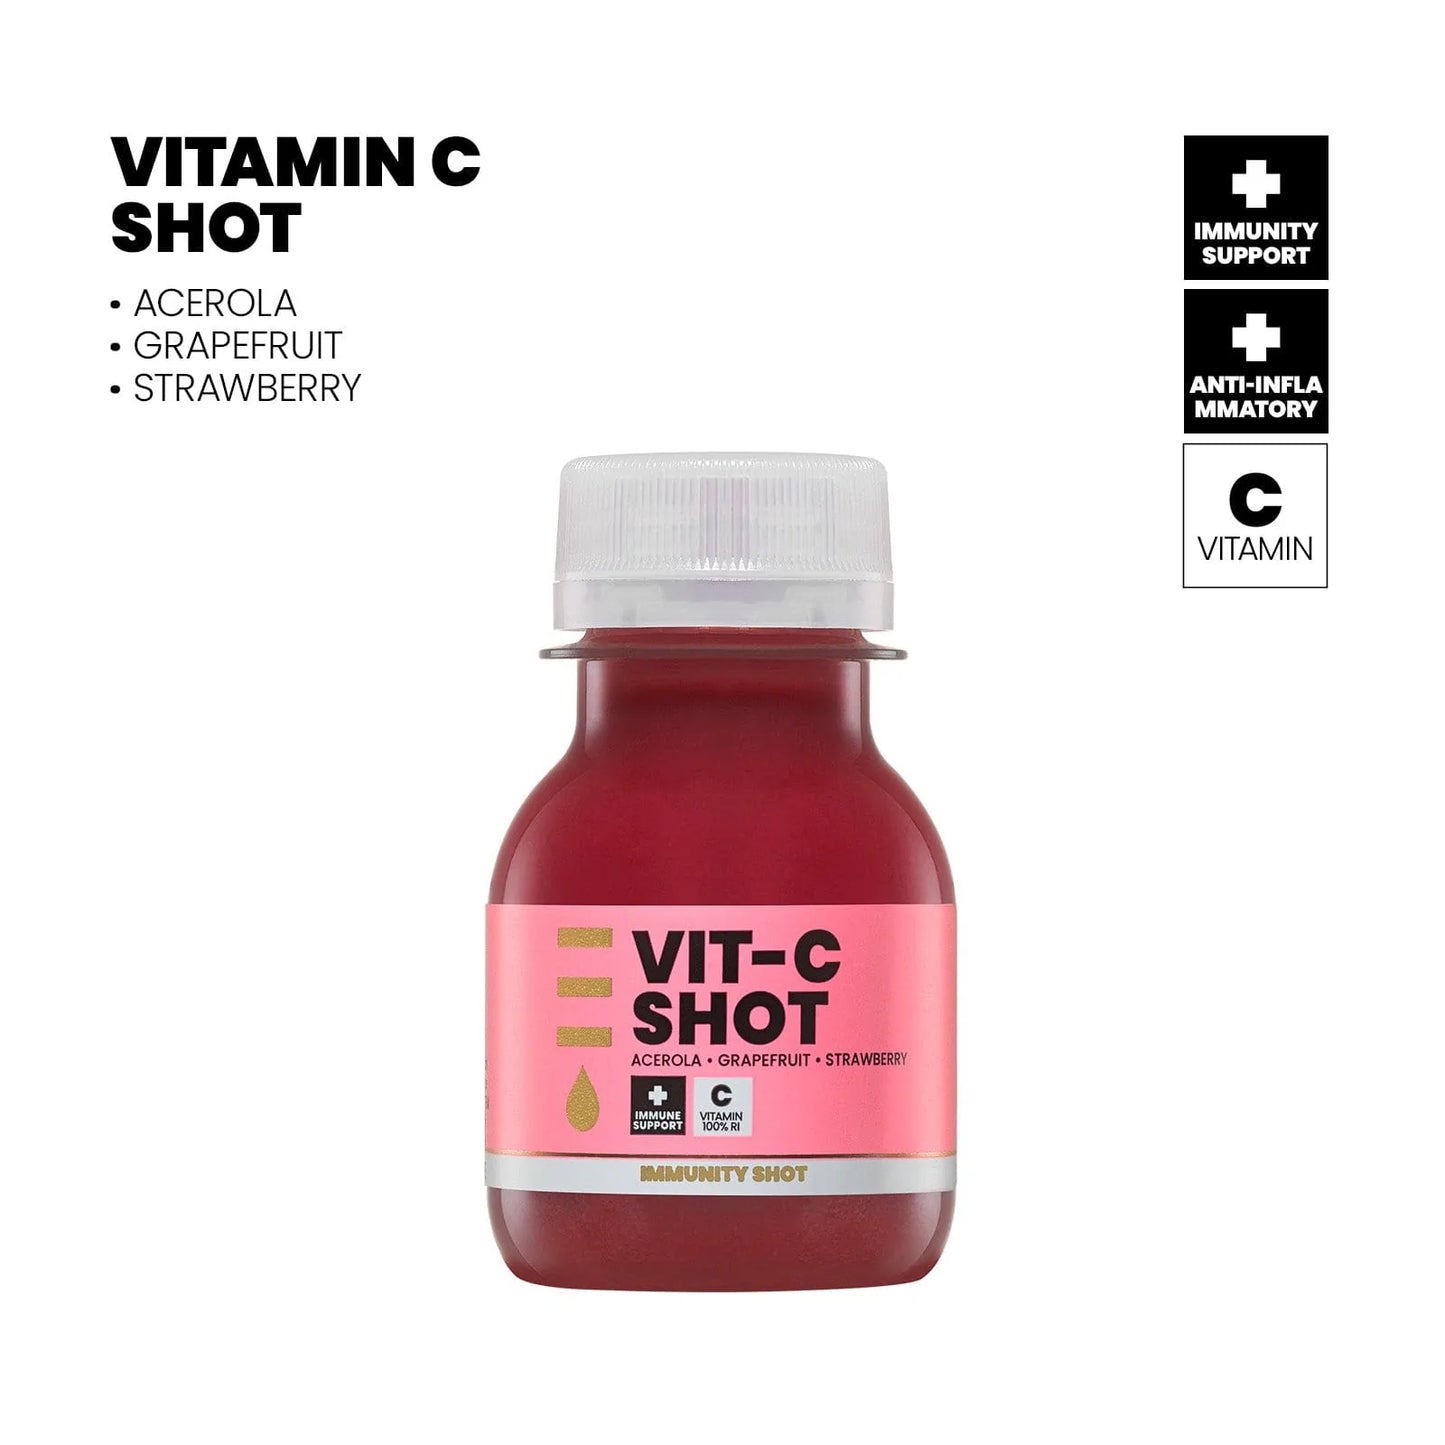 Vitamin C Shot Packs